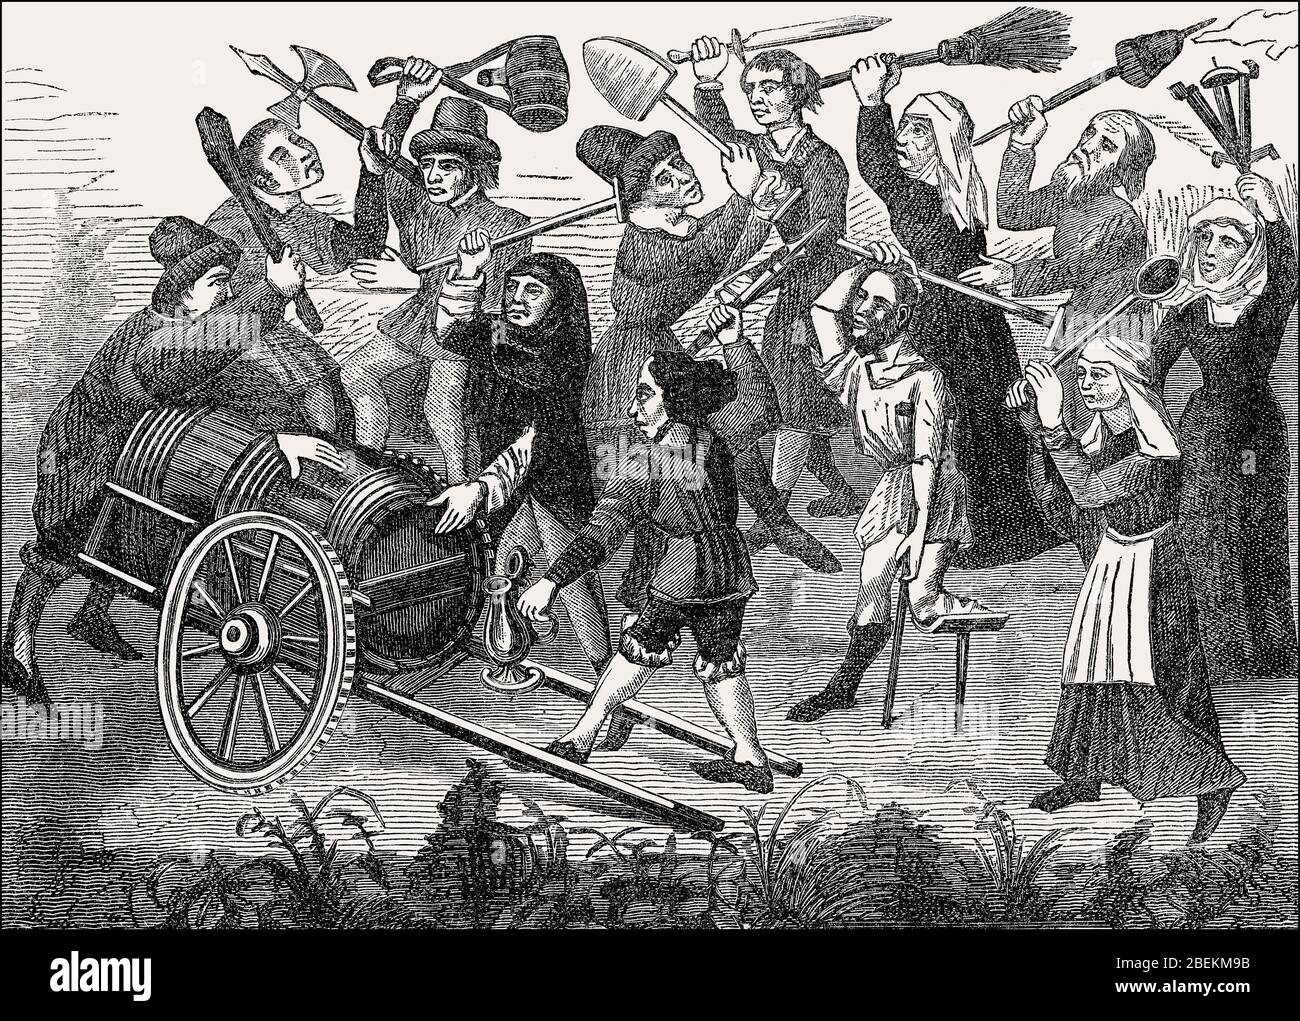 Battaglia di mendicanti e contadini che combattono intorno ad un barile di vino, Parigi, Francia, 15 ° secolo Foto Stock